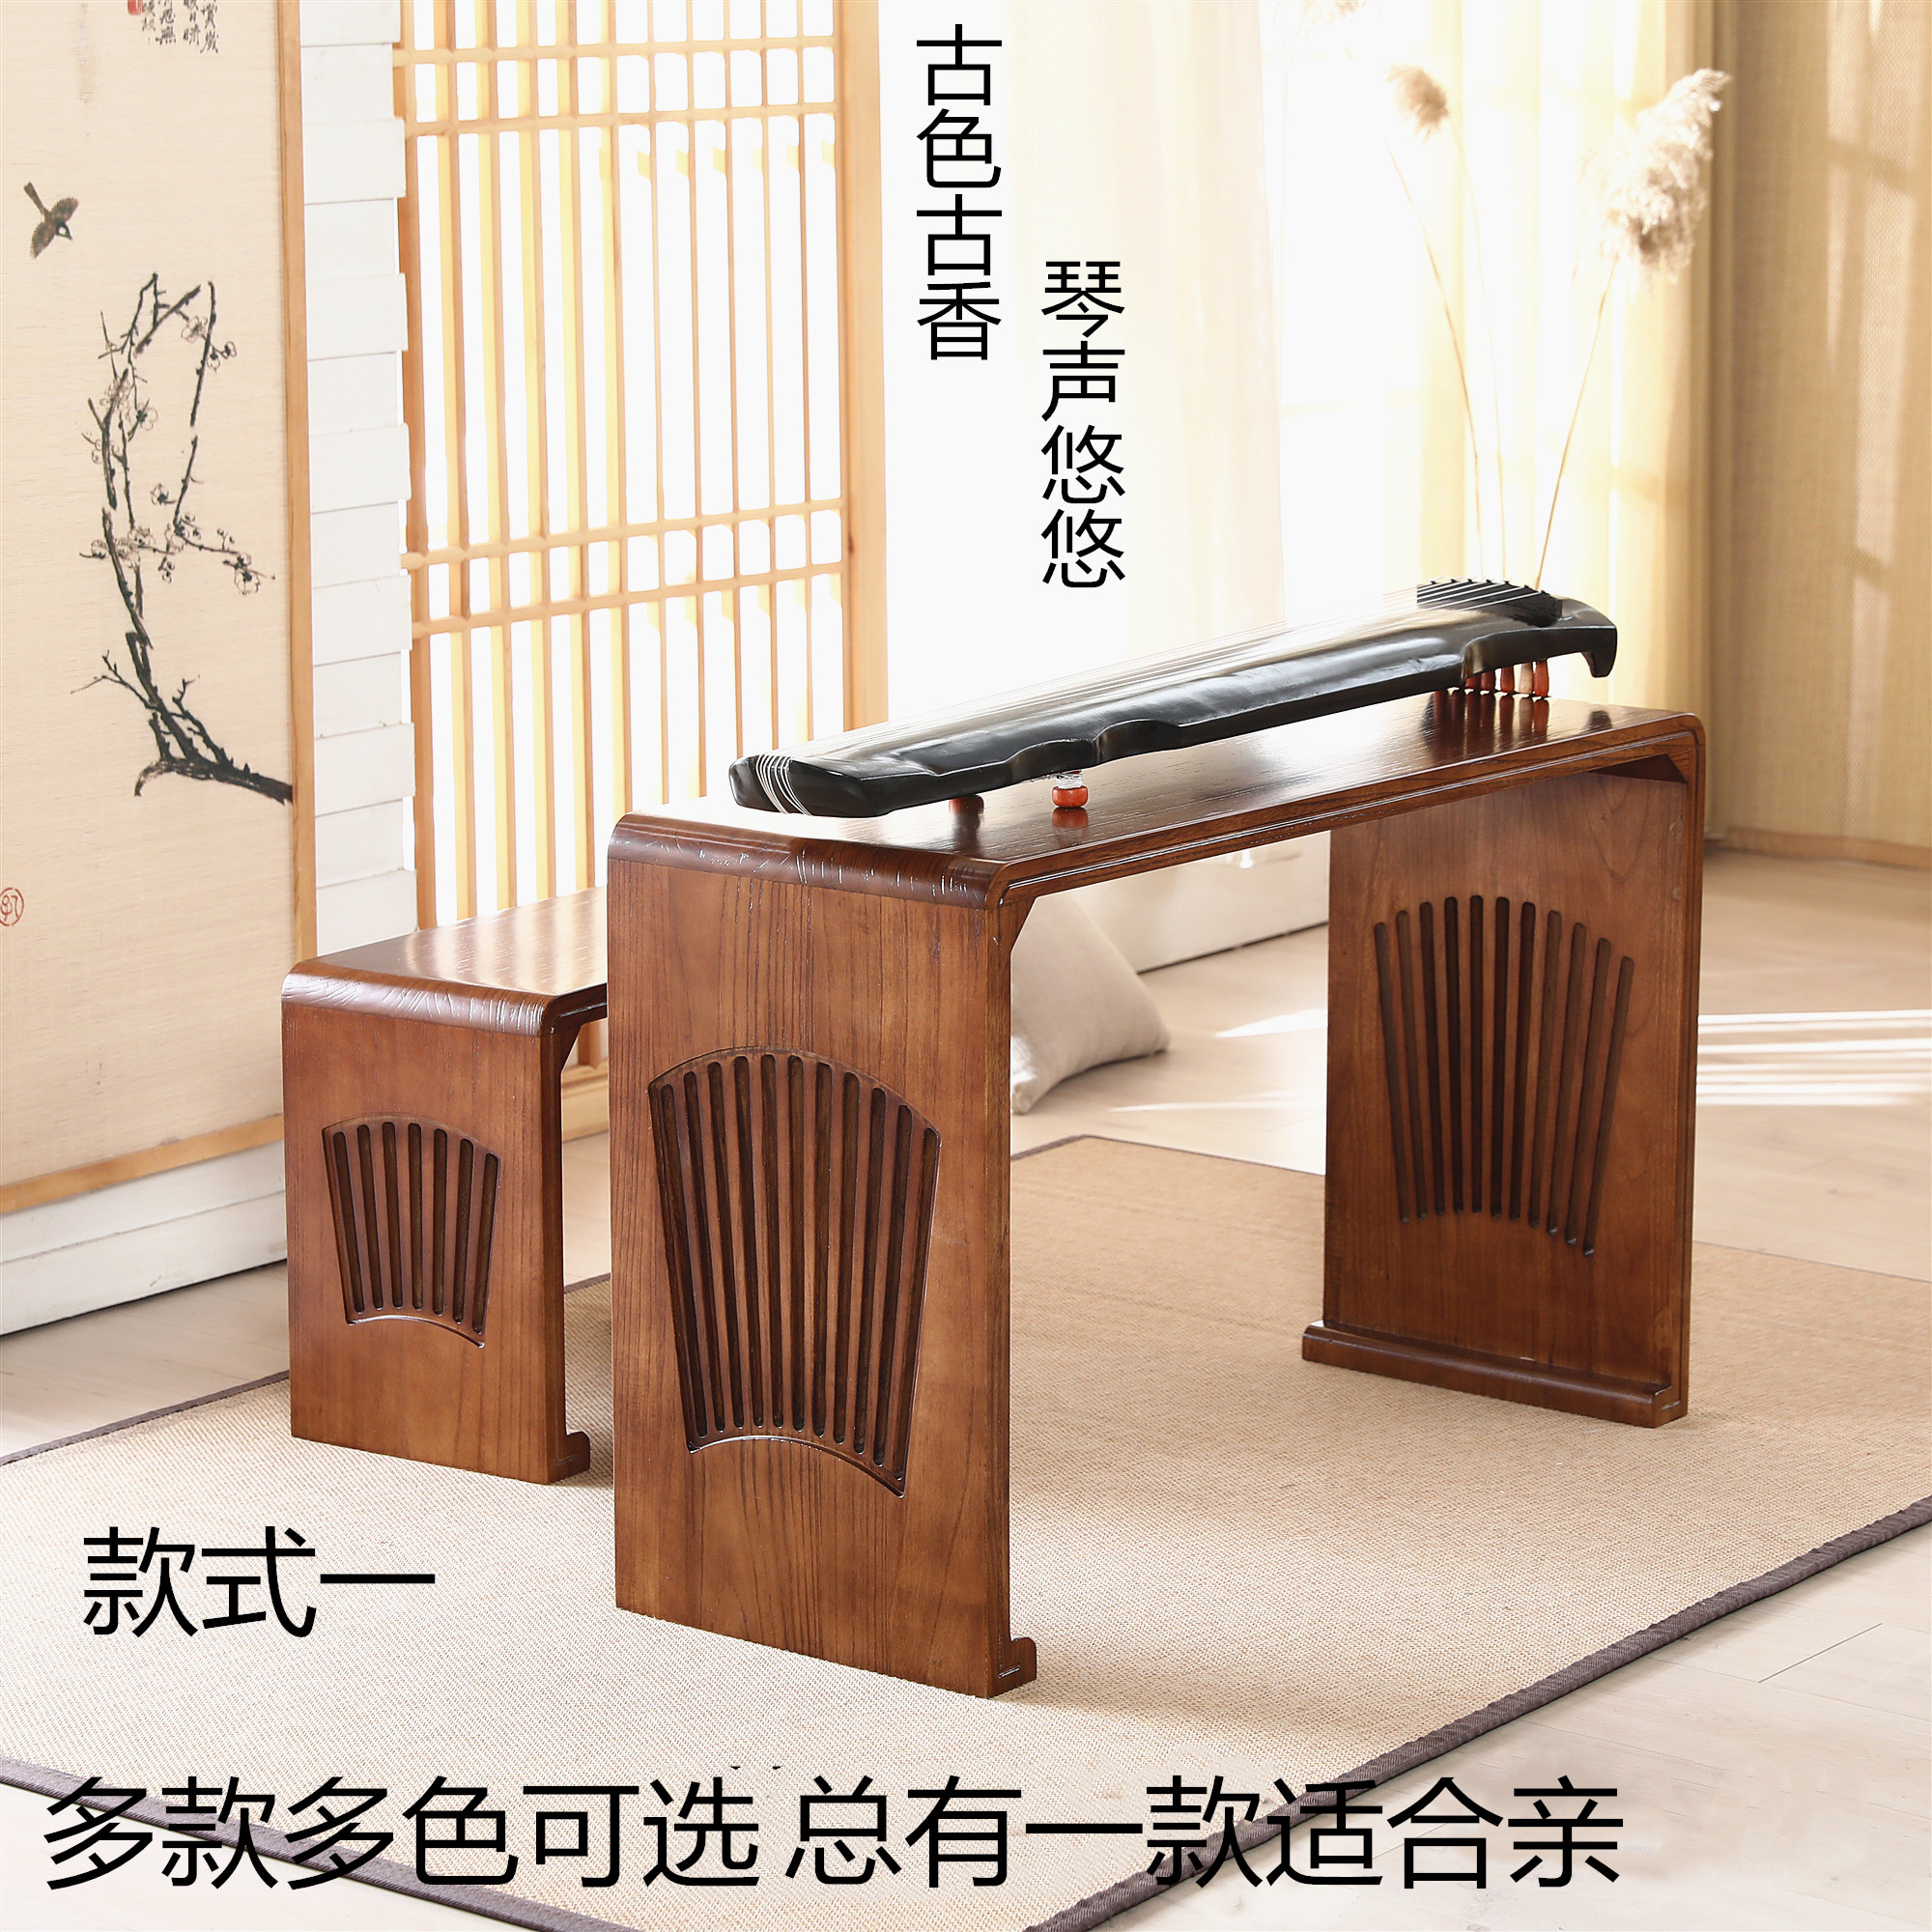 古琴桌凳共鸣琴桌实木书法桌子国学桌仿古书画茶艺桌围棋桌椅 中式